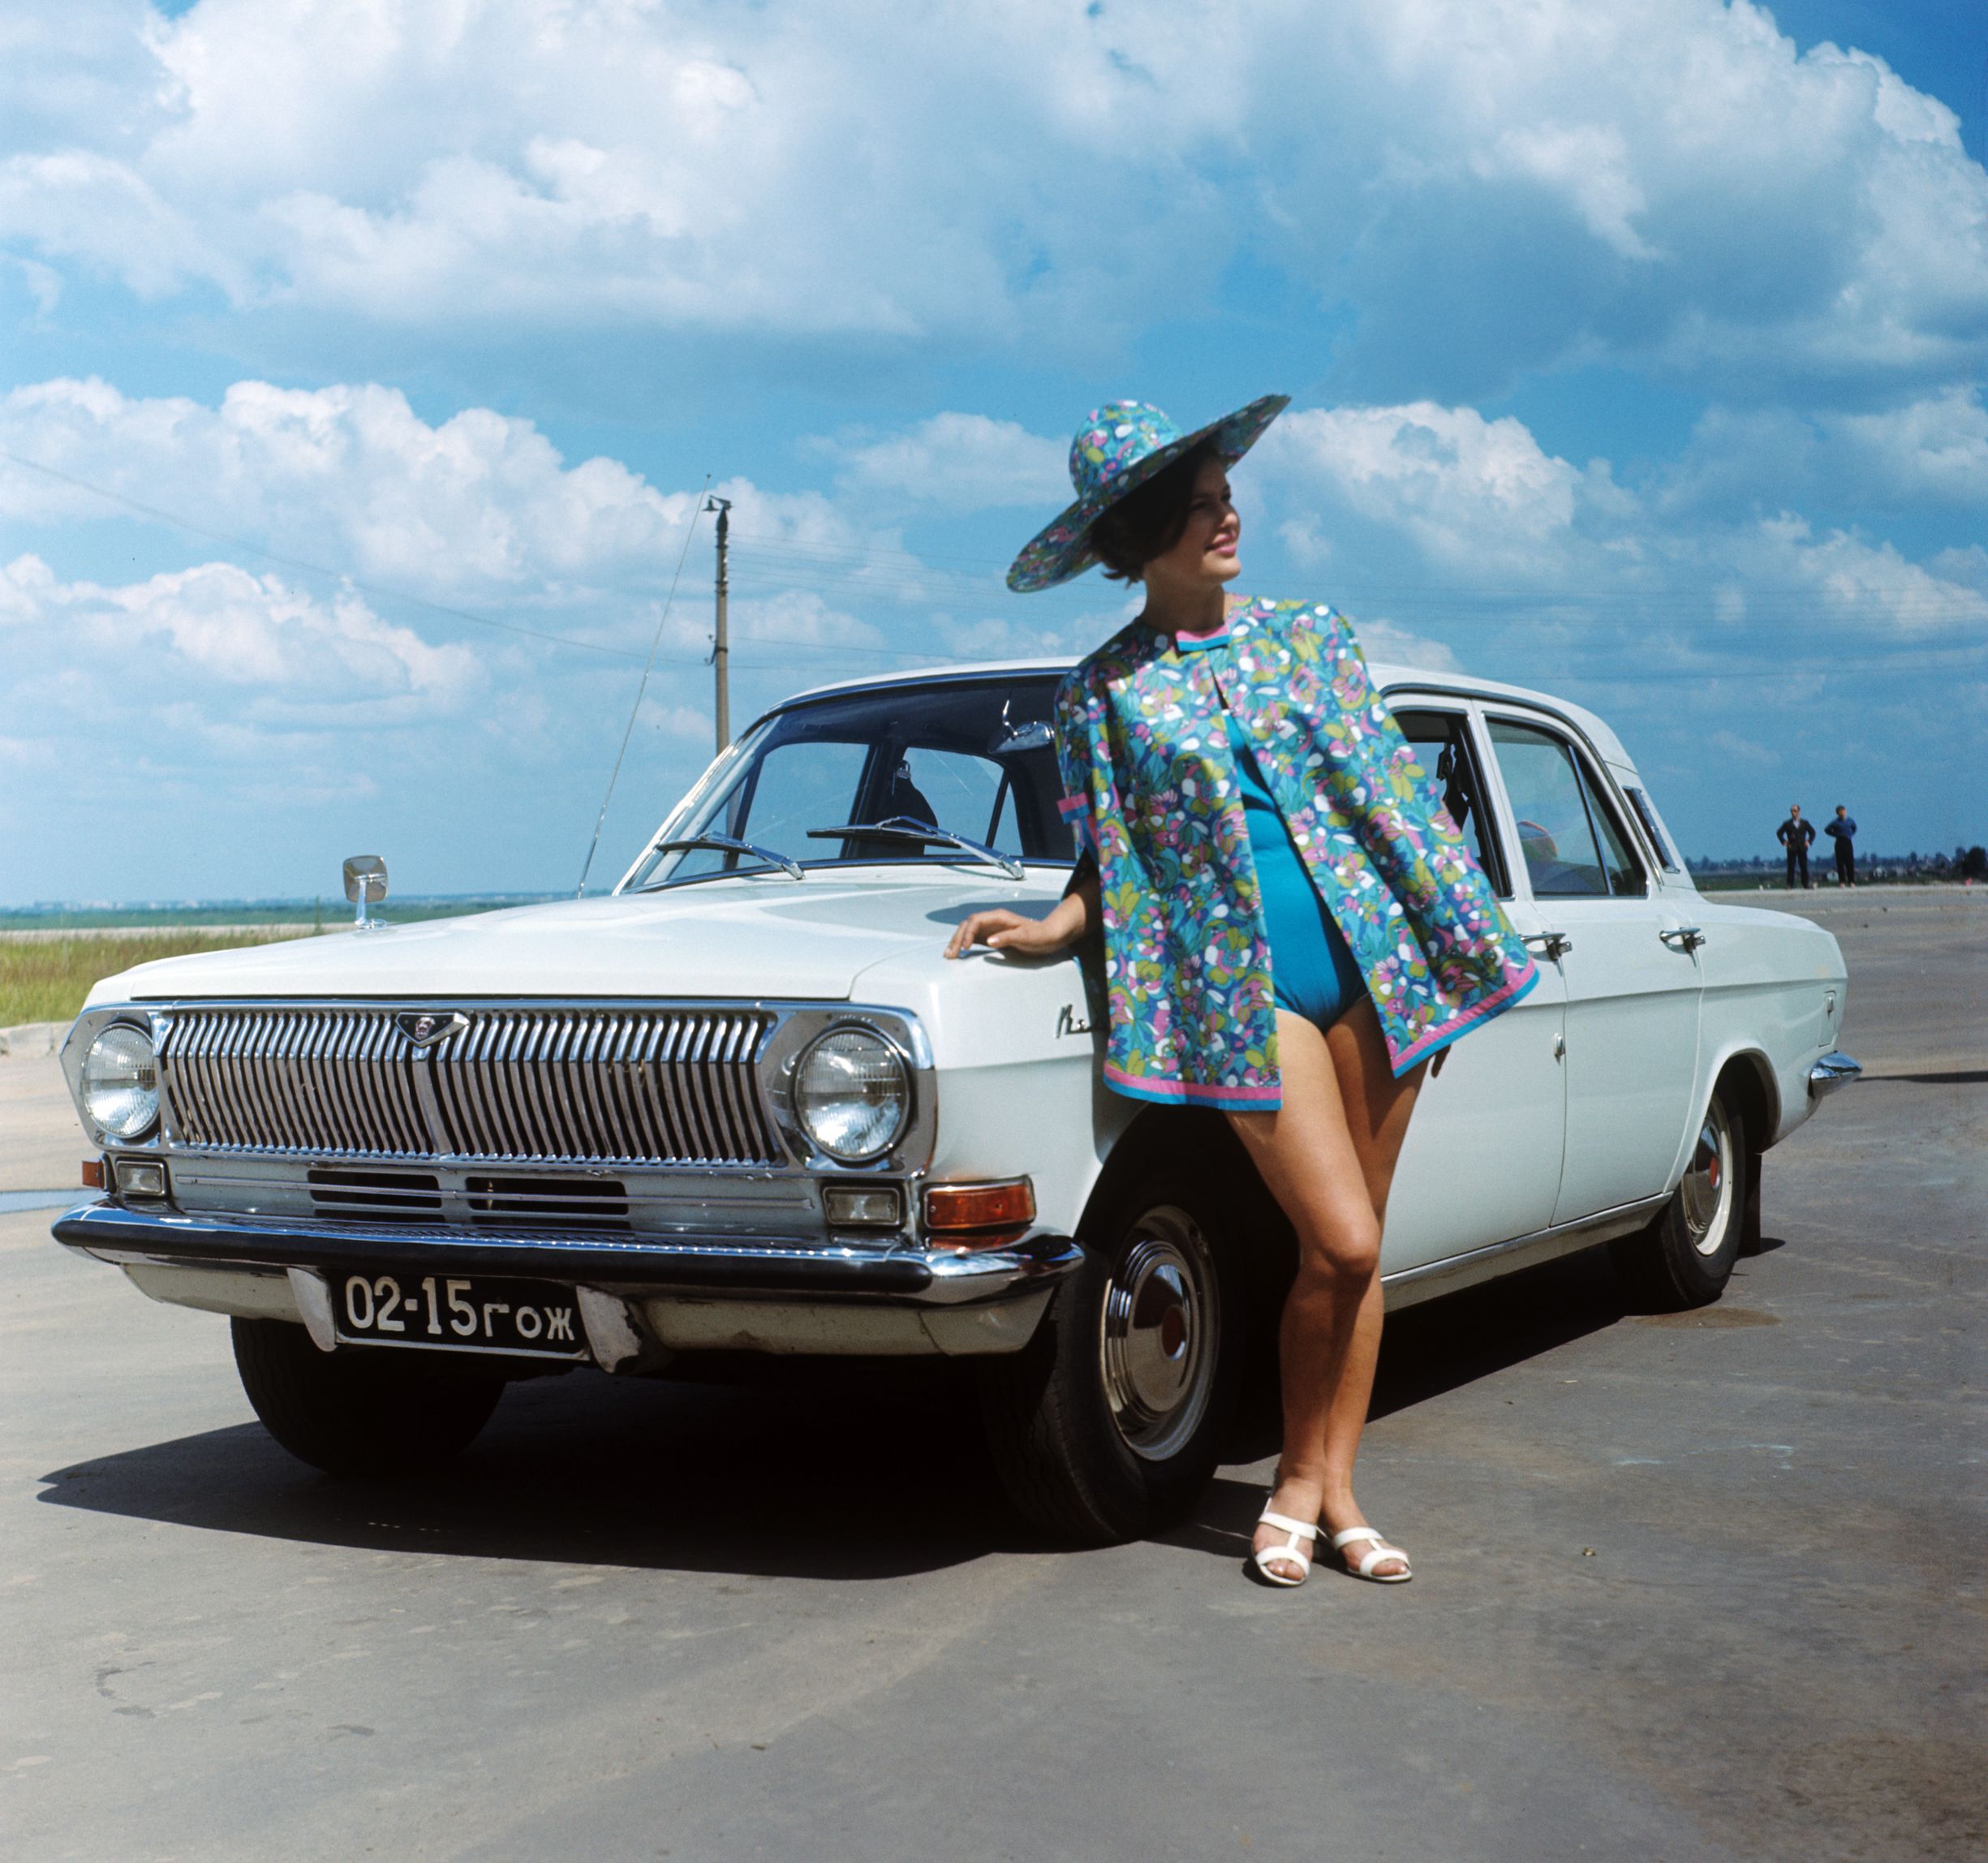 Манекенщица демонстрирует пляжную одежду на фоне автомобиля «Волга». Горький, 1970 г.